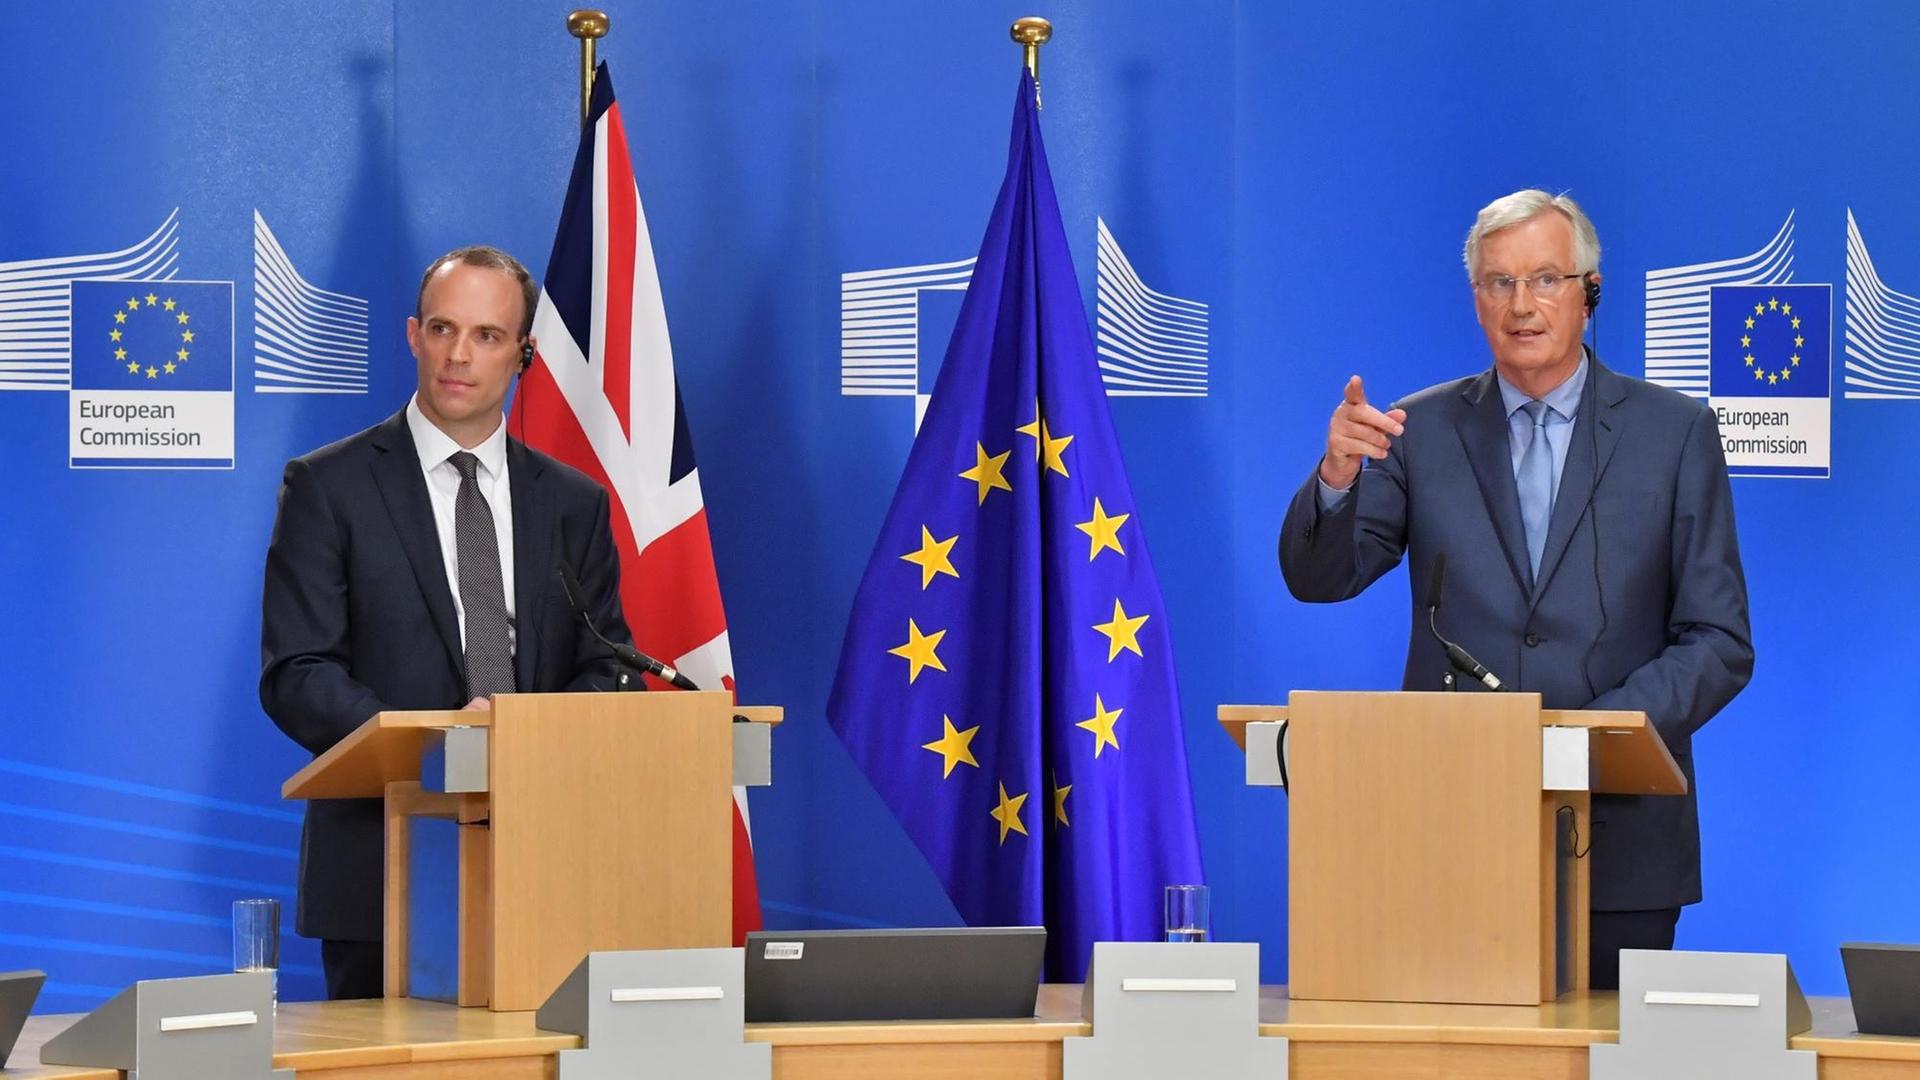 Das Bild zeigt den britischen Brexit-Unterhändler Dominic Raab (l) und EU-Chefunterhändler Michel Barnier (r). Sie halten gemeinsam im Gebäude der Europäischen Kommission eine Pressekonferenz ab. Sie stehen an hölzernen Pulten hinter Mikrofonen. Im Hintergrund sind eine britische und eine EU-Flagge zu sehen.